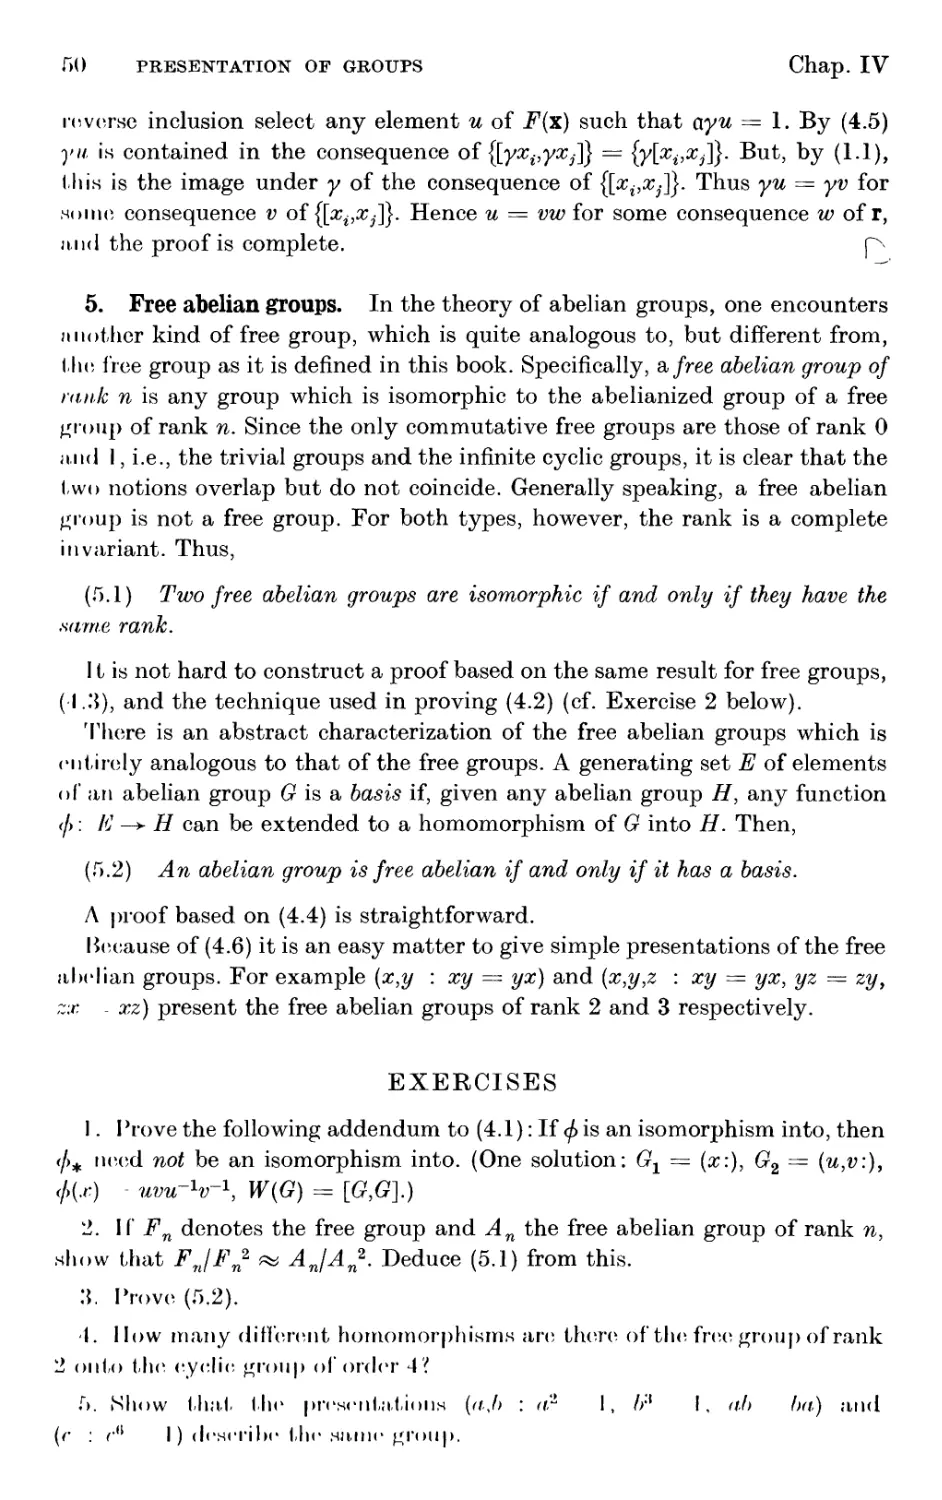 5. Free abelian groups